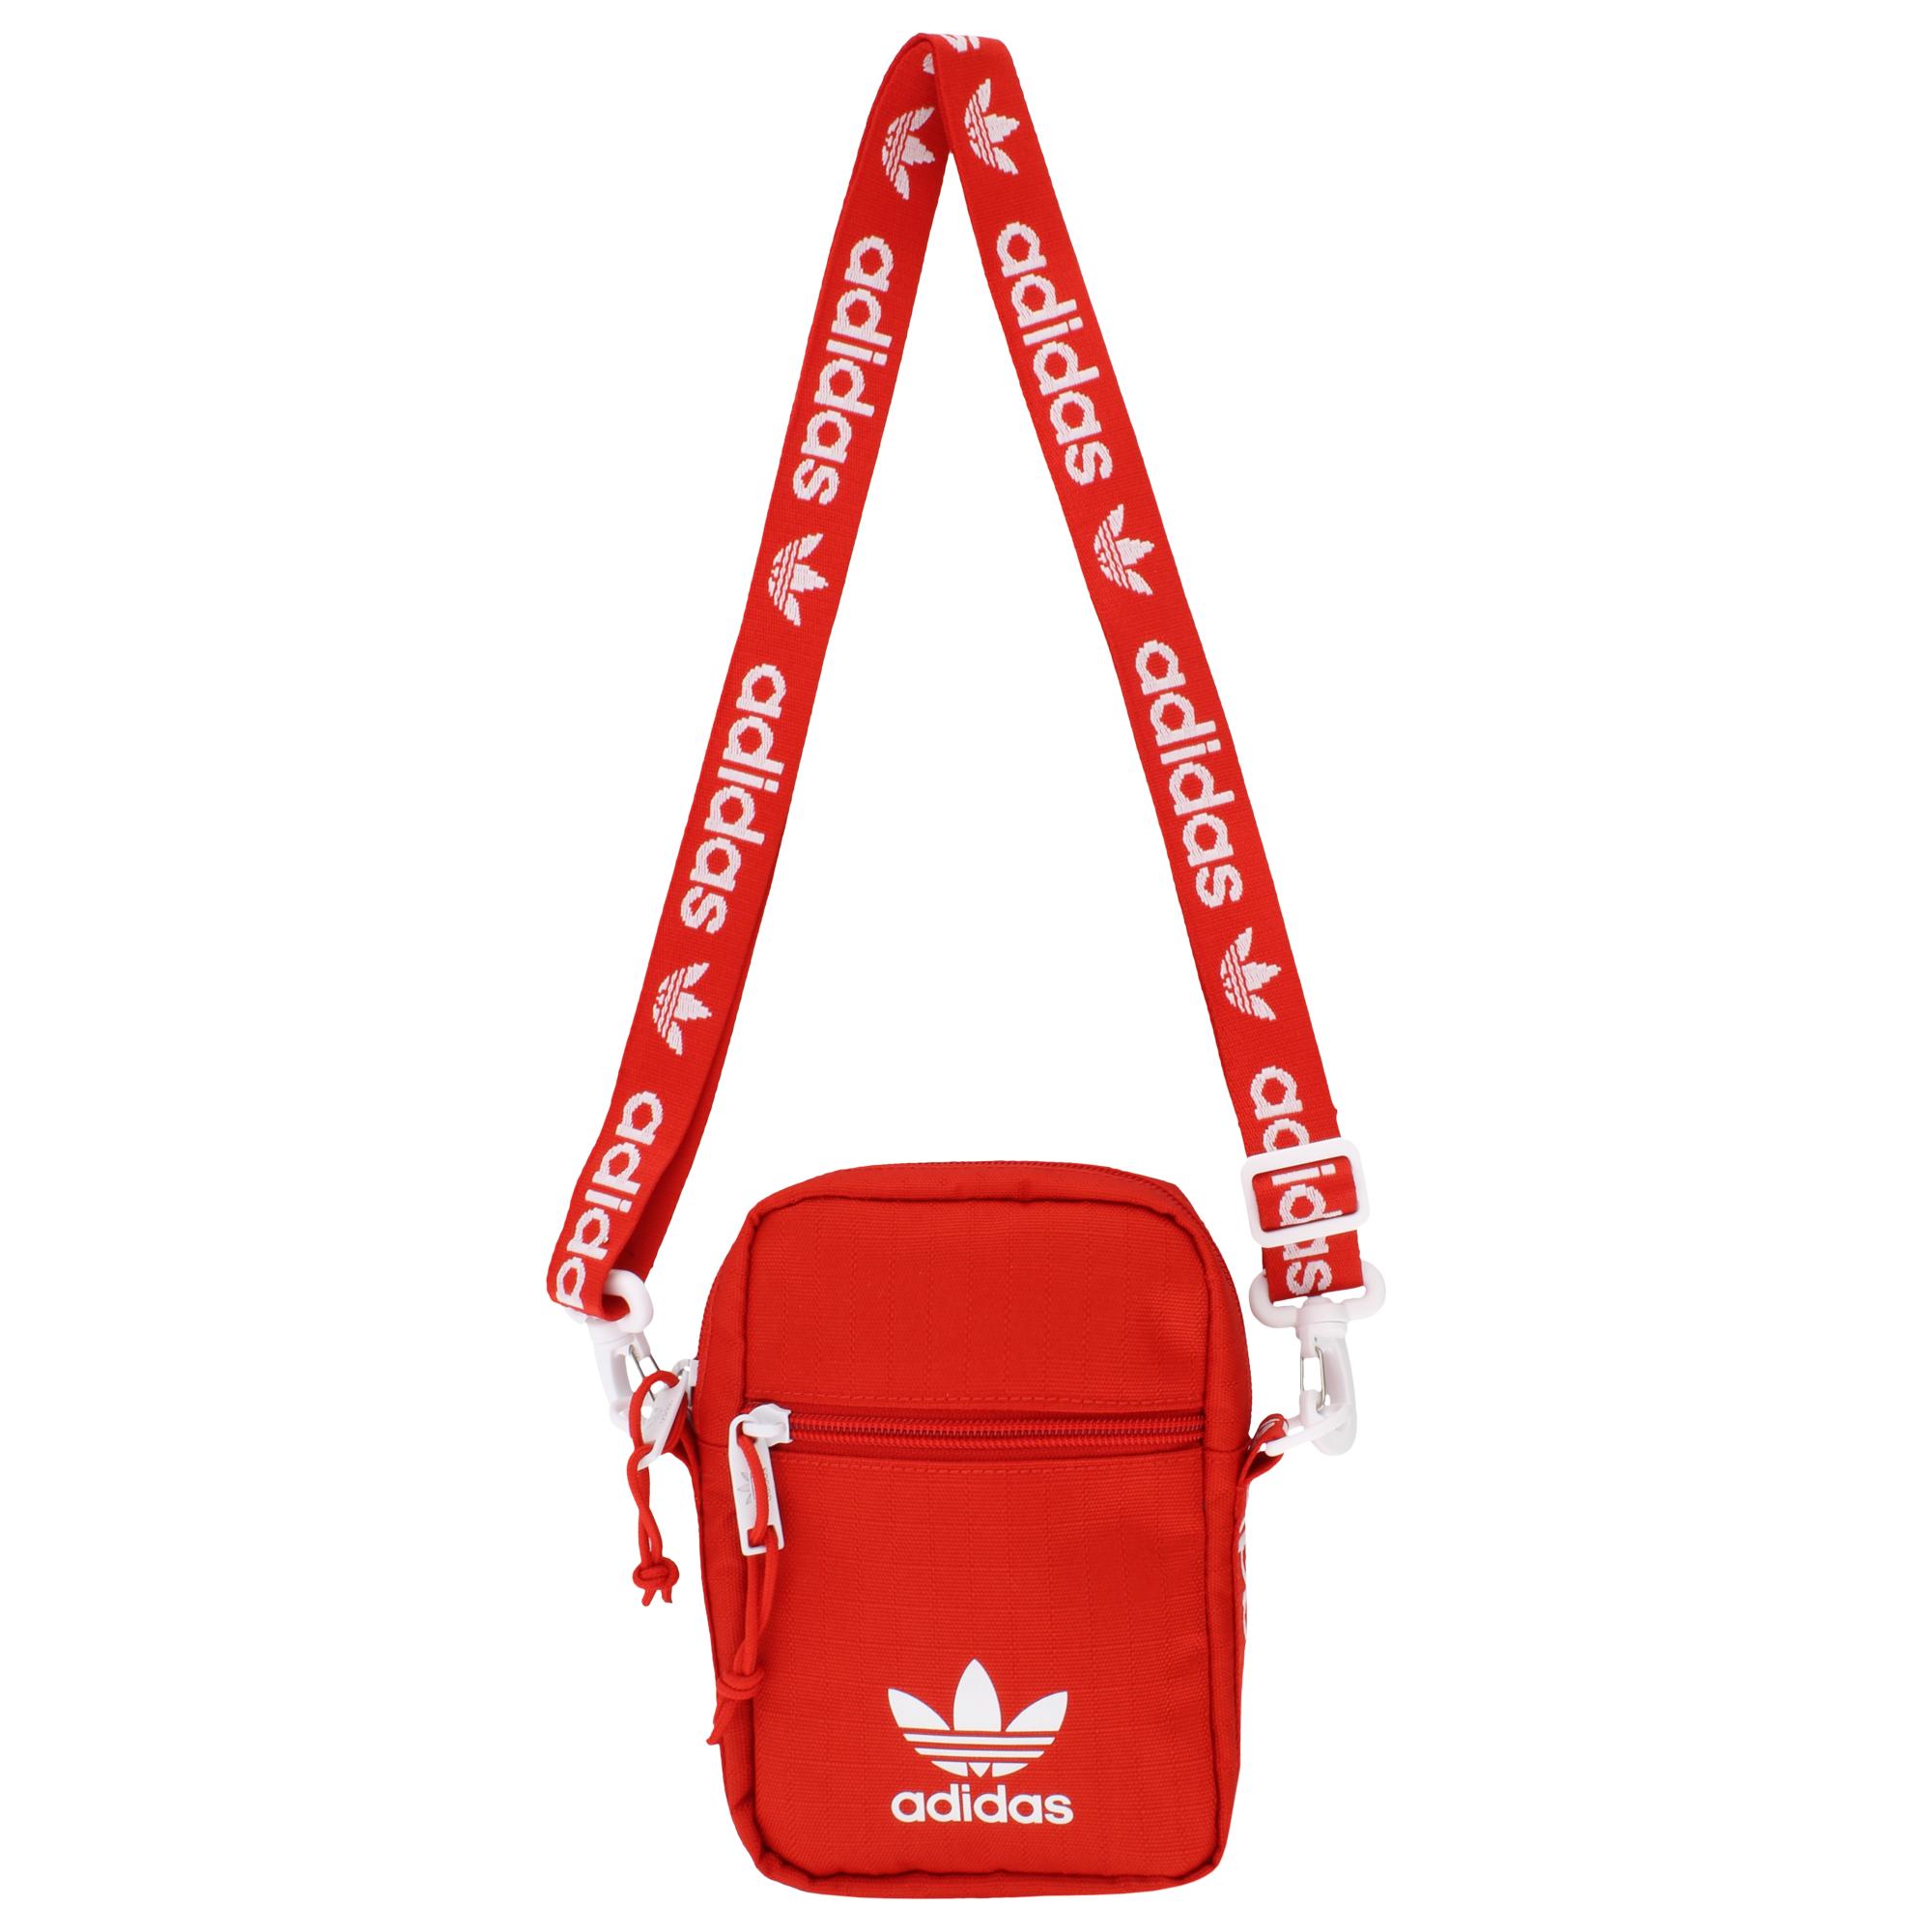 red adidas festival bag